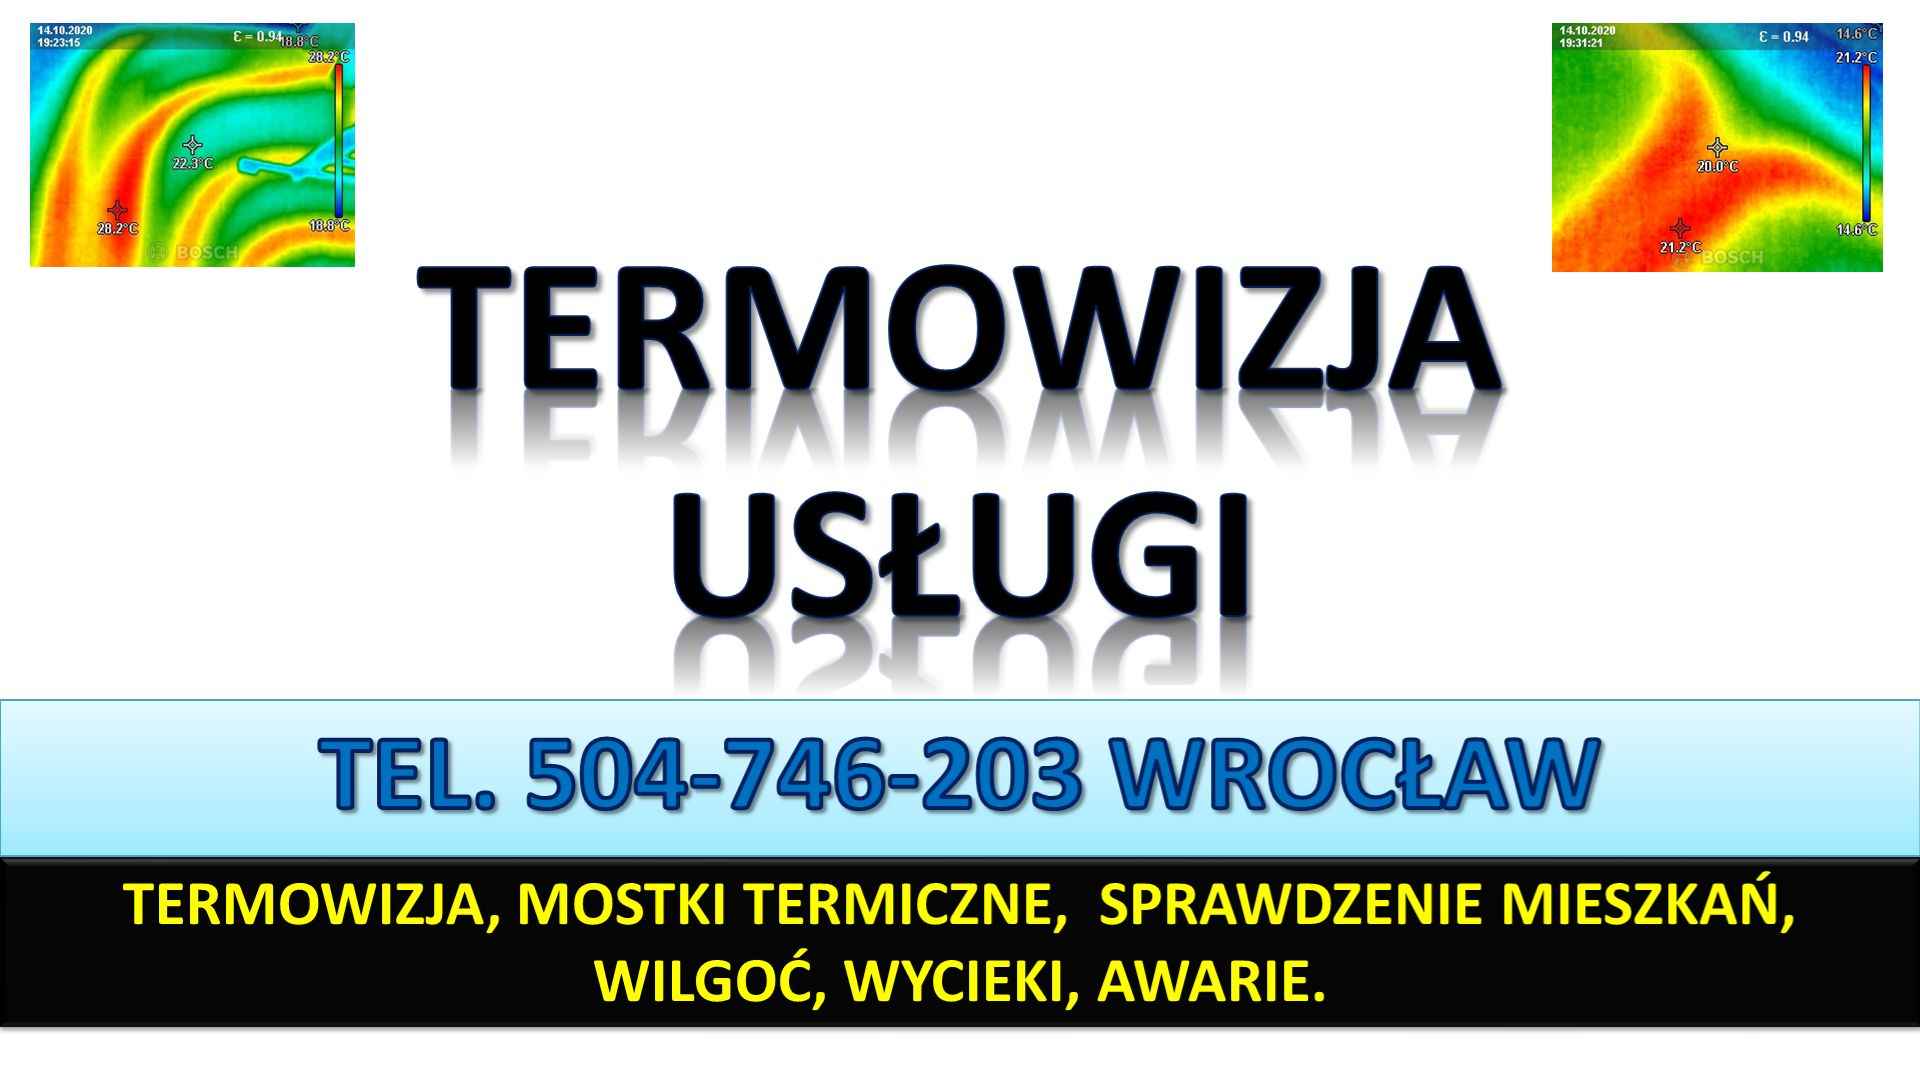 Termowizja tel. 504-746-203, lokalizacja wycieku, Wrocław, wilgoć Psie Pole - zdjęcie 1